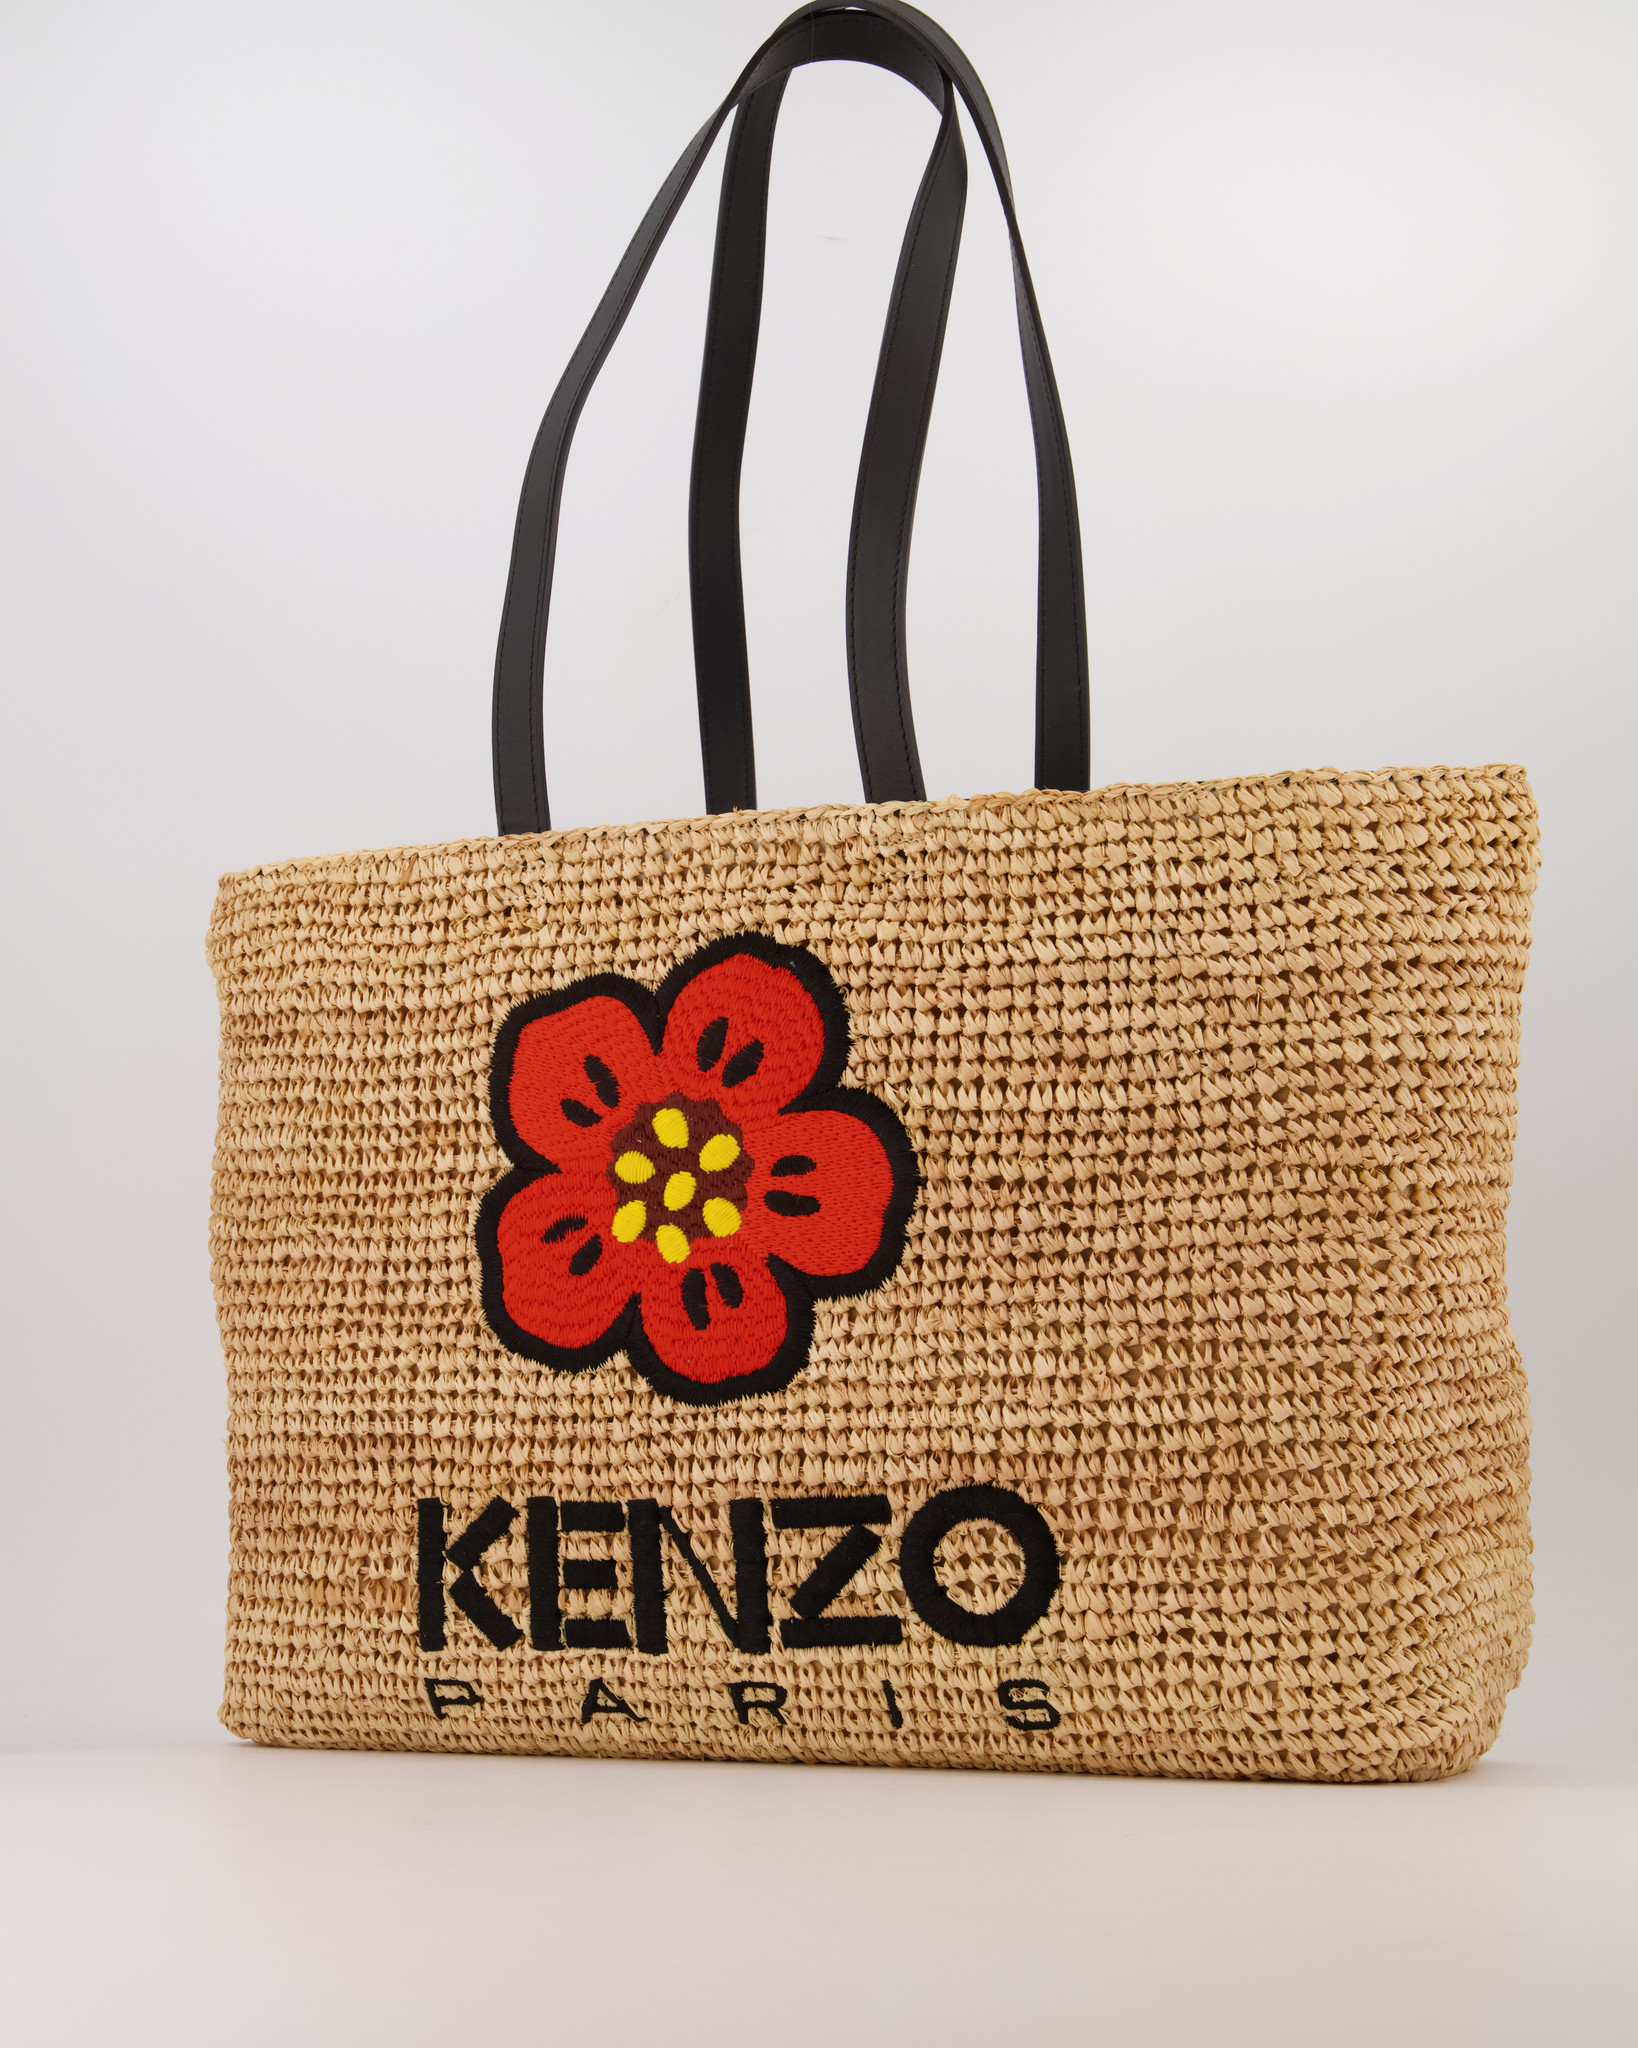 KENZO BY NIGO WOMAN BLACK TOTE BAGS - KENZO BY NIGO - TOTE BAGS